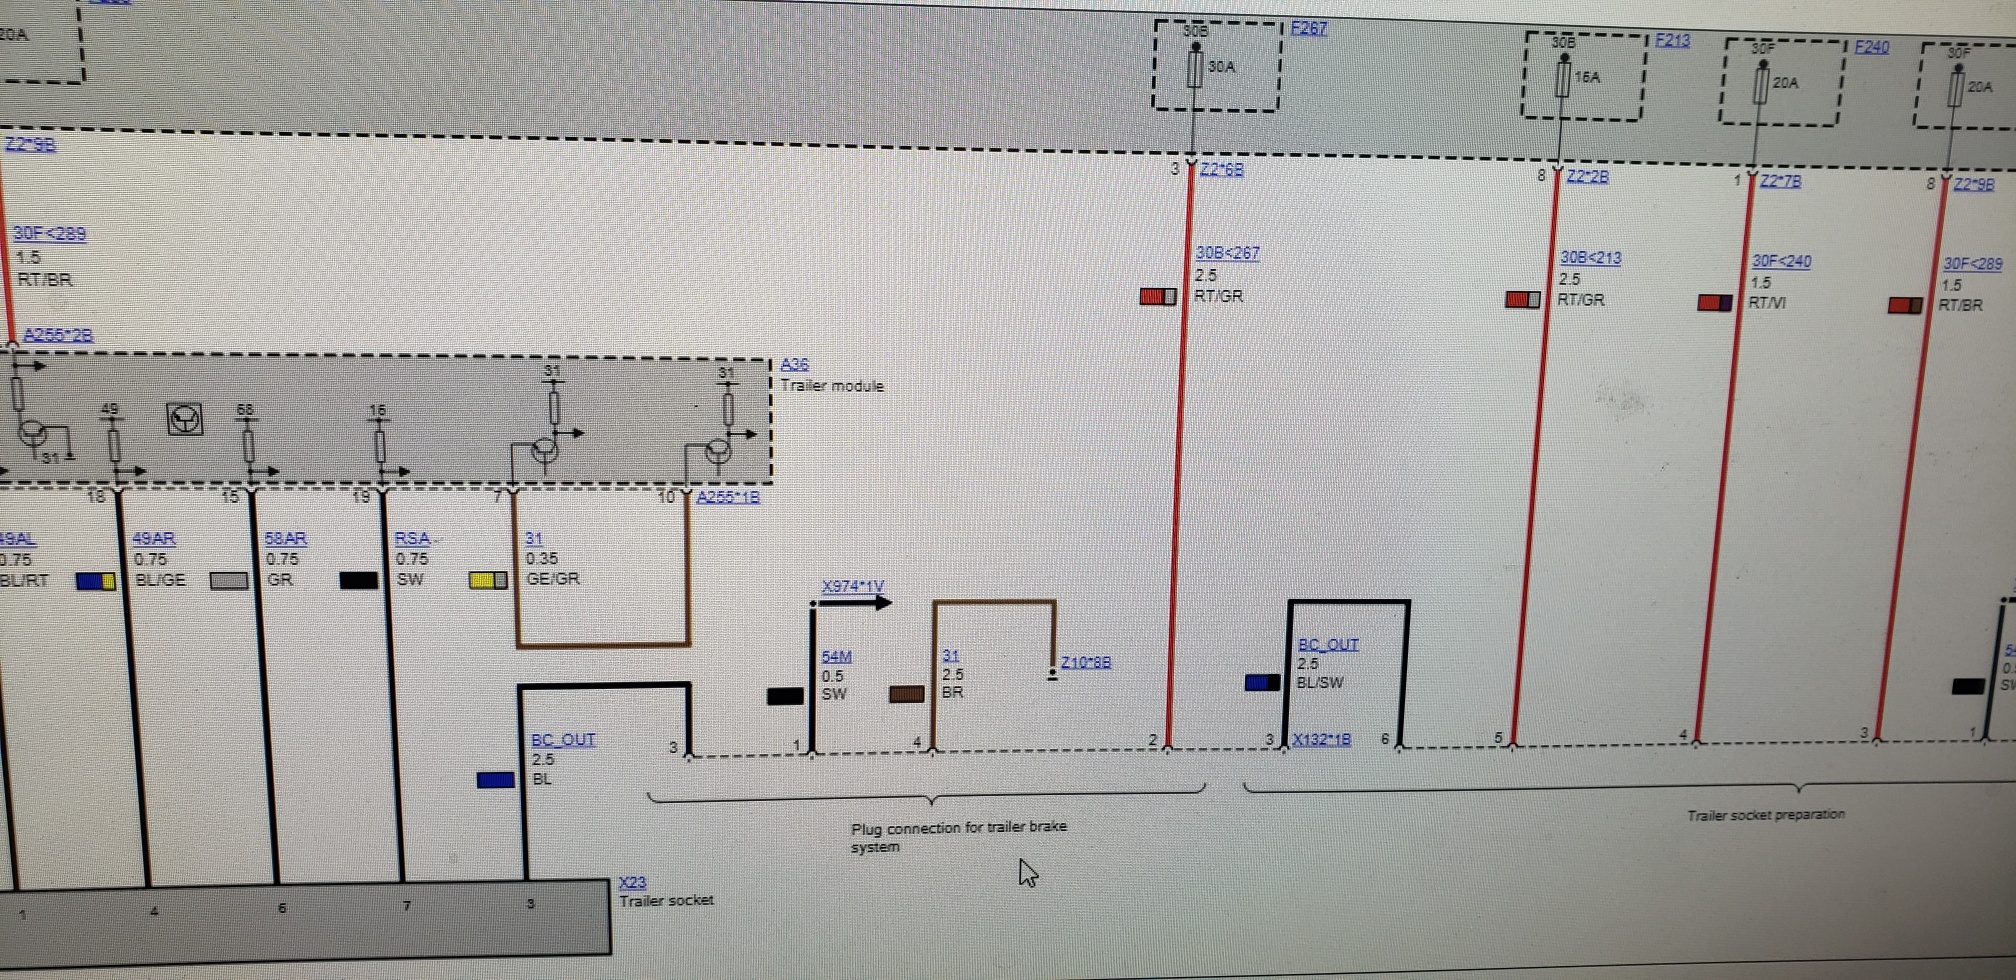 Tekonsha Prodigy P2 Brake Controller Wiring Diagram - Wiring Diagram